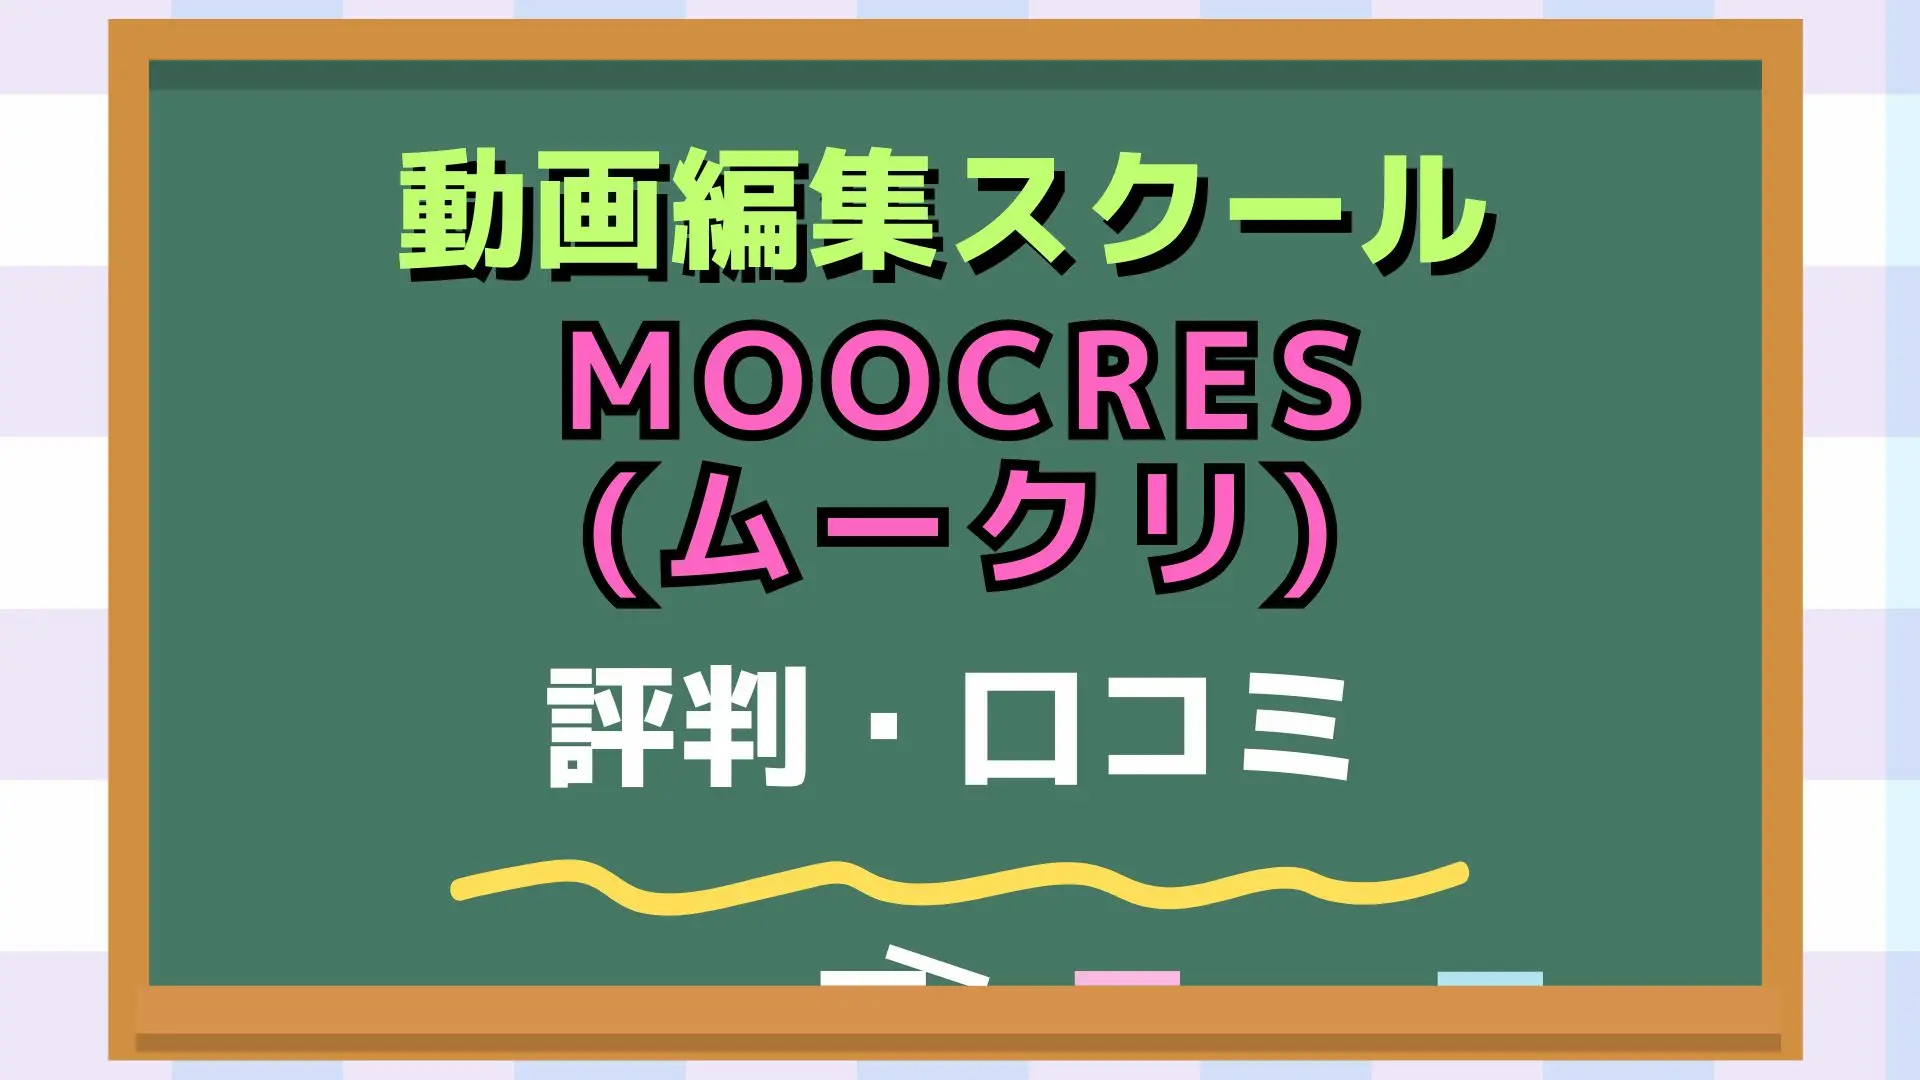 MOOCRES(ムークリ)のアイキャッチ画像